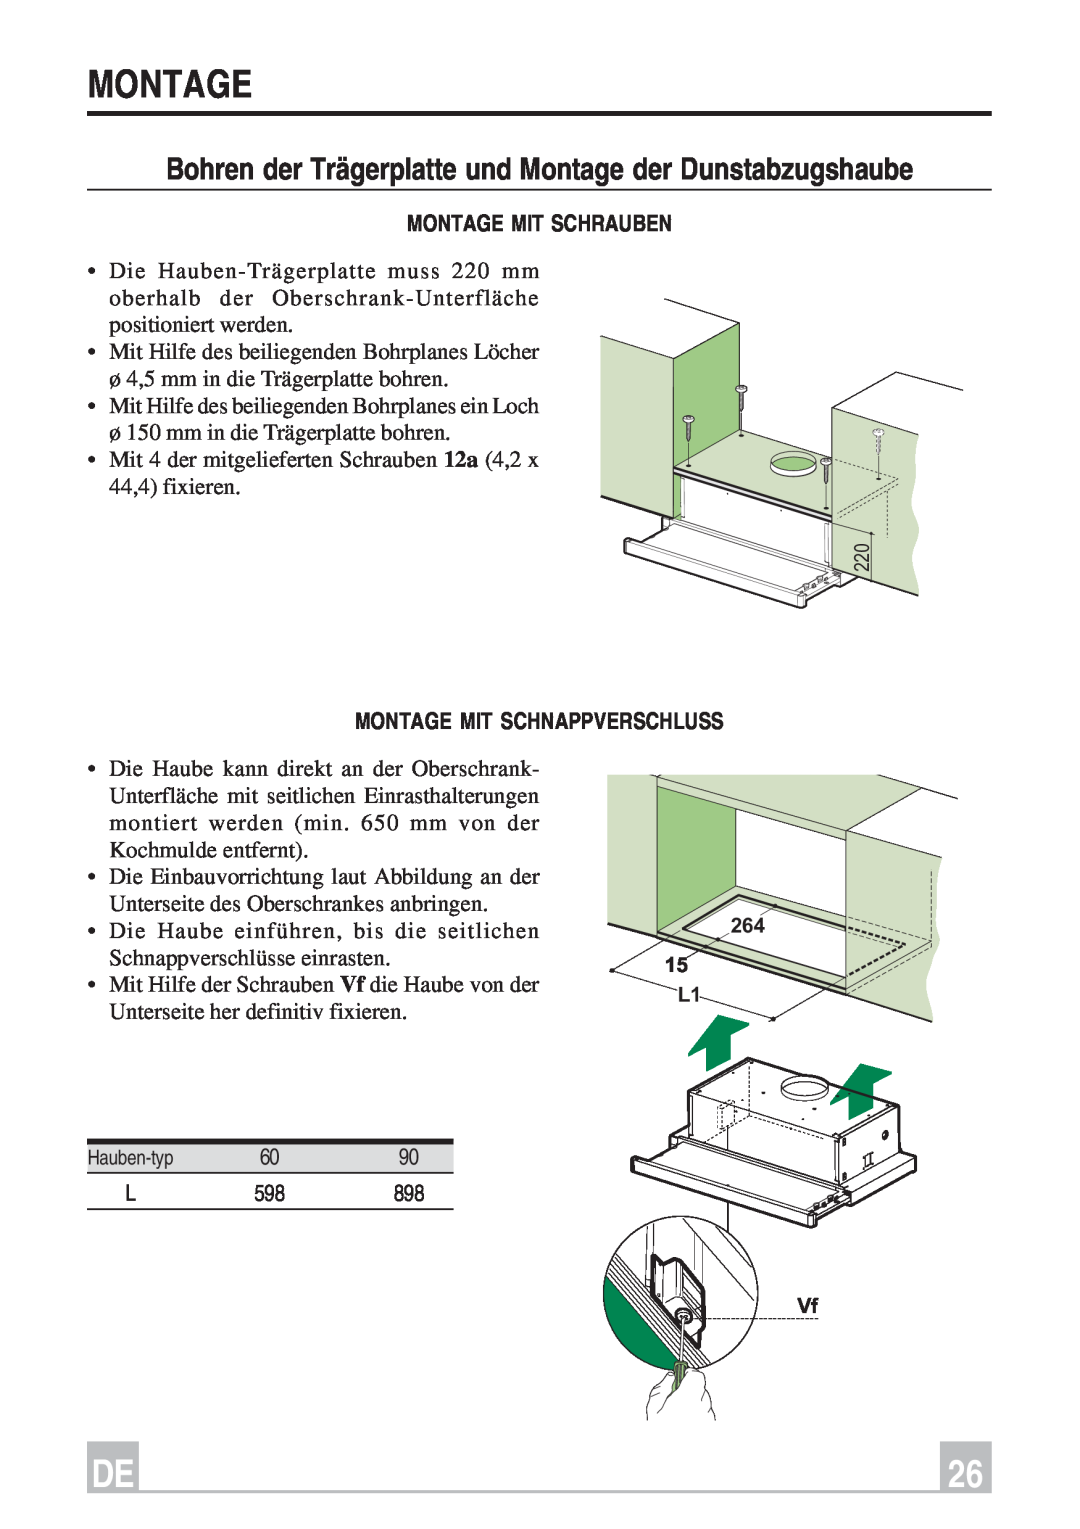 Smeg KSET66, KSET96 instruction manual Montage Mit Schrauben, Montage Mit Schnappverschluss 